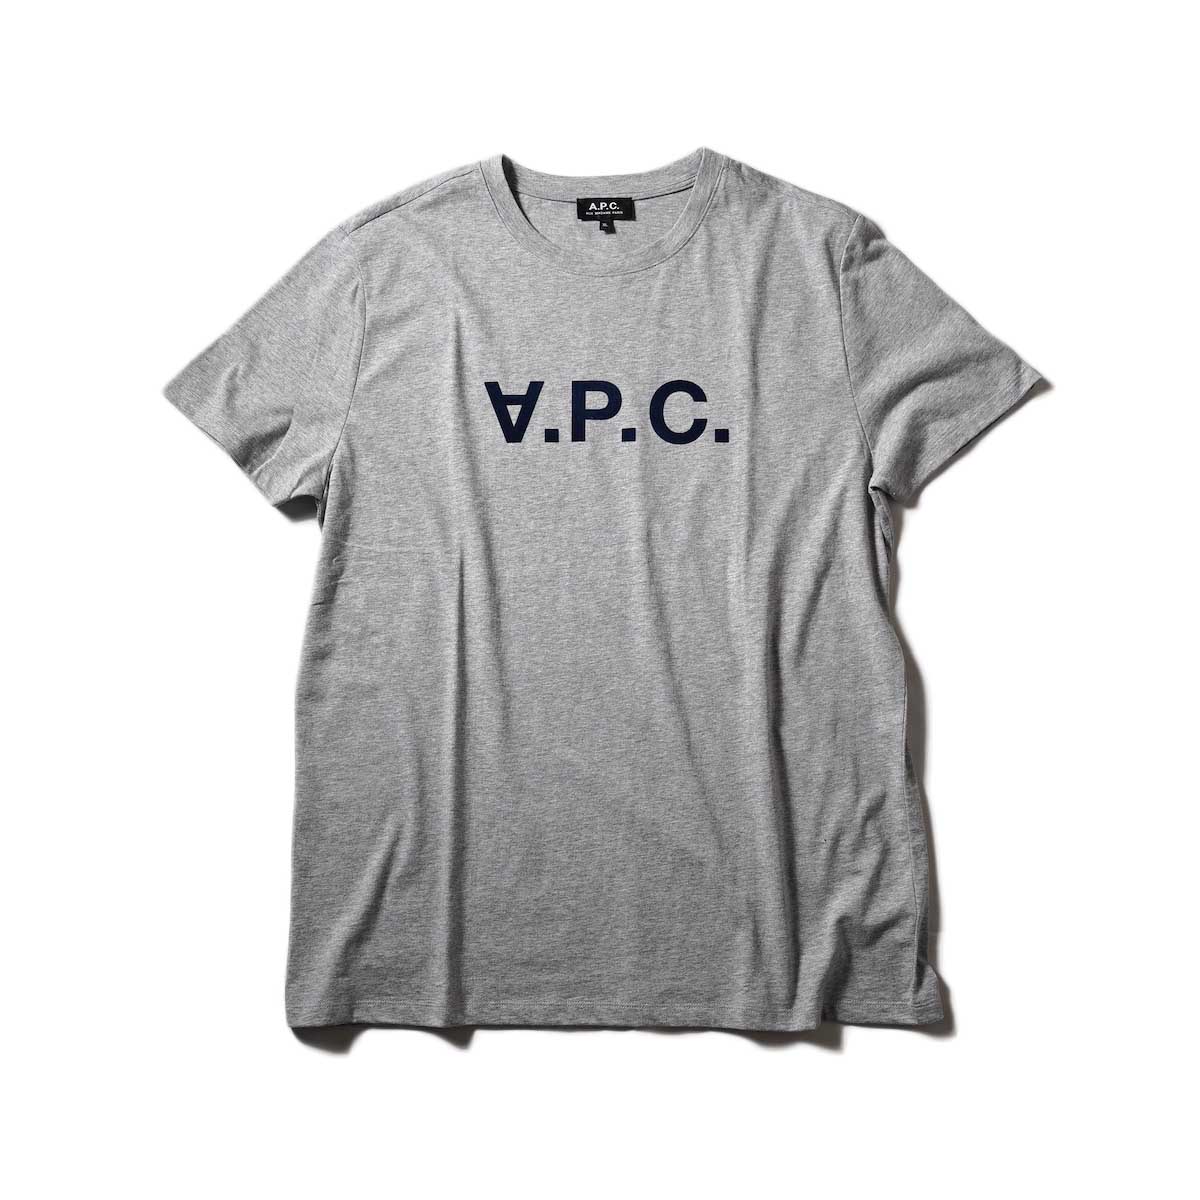 A.P.C. / VPC カラーTシャツ (Heather Gray)